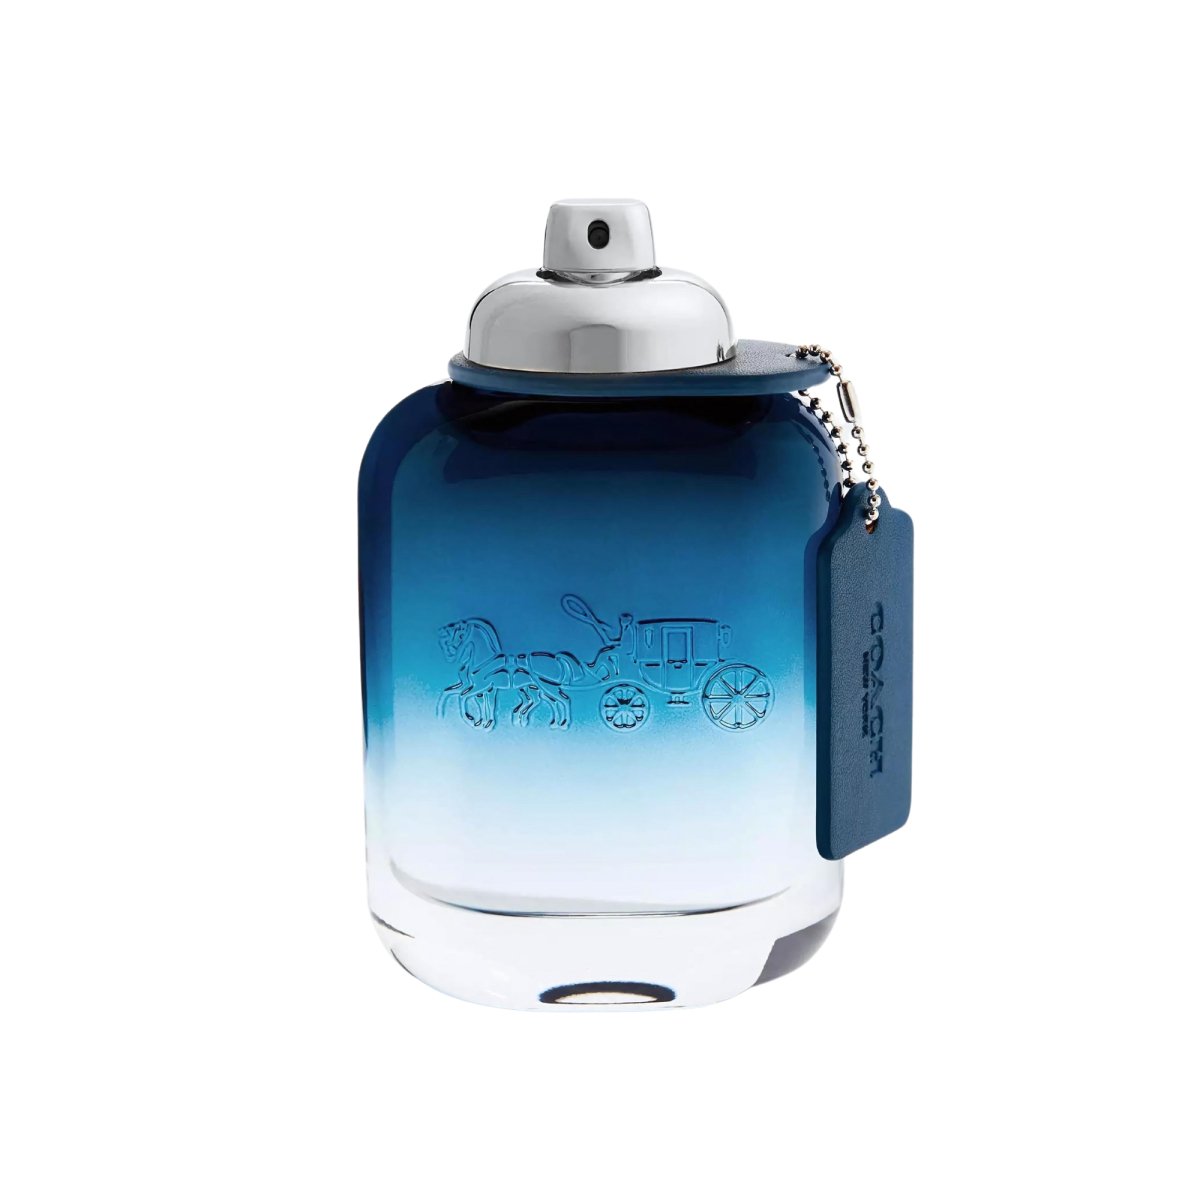 Coach New York Blue 3.3oz Eau De Toilette Spray - Perfume Headquarters - Coach - 3.3 oz - Eau de Toilette - Fragrance - 3386460113724 - Fragrance